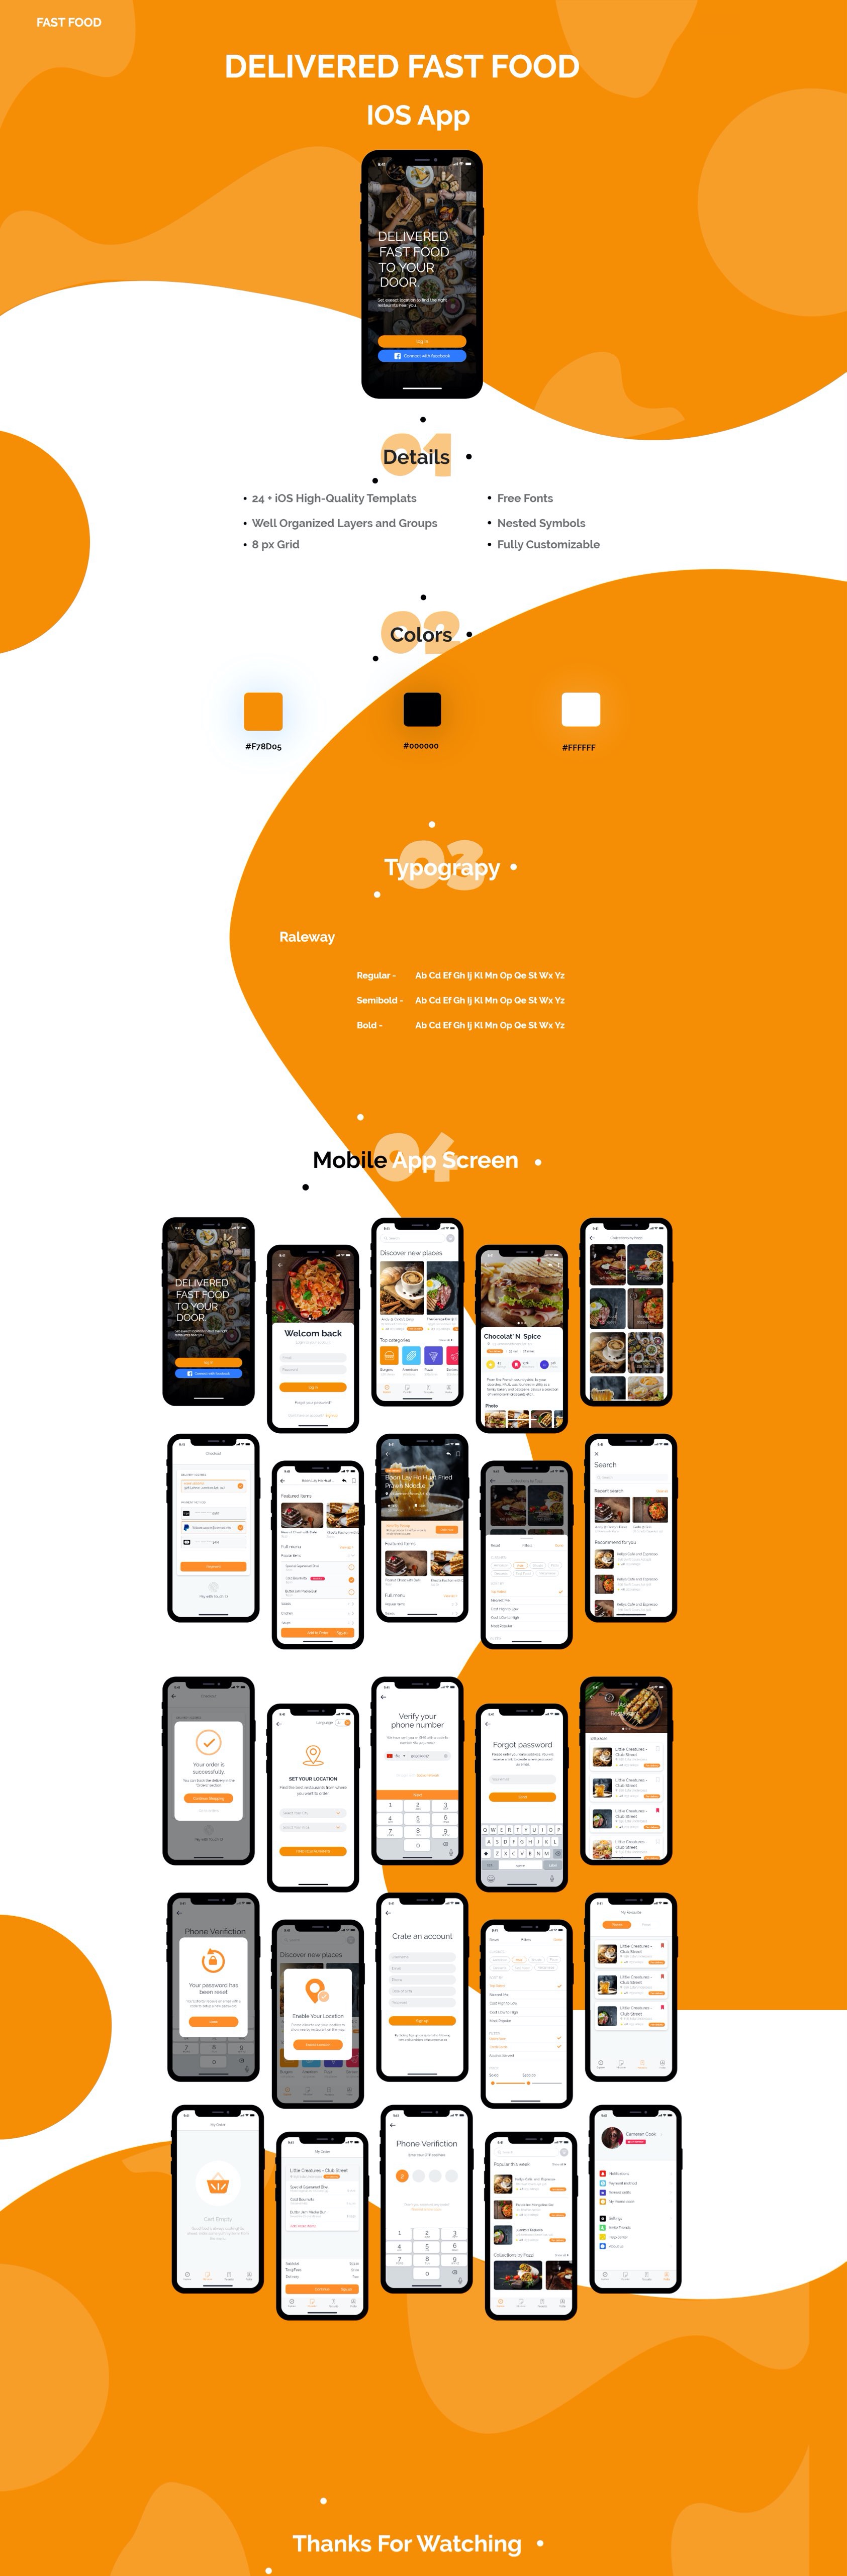 橙色系生鲜购物APP UI界面设计 .xd素材